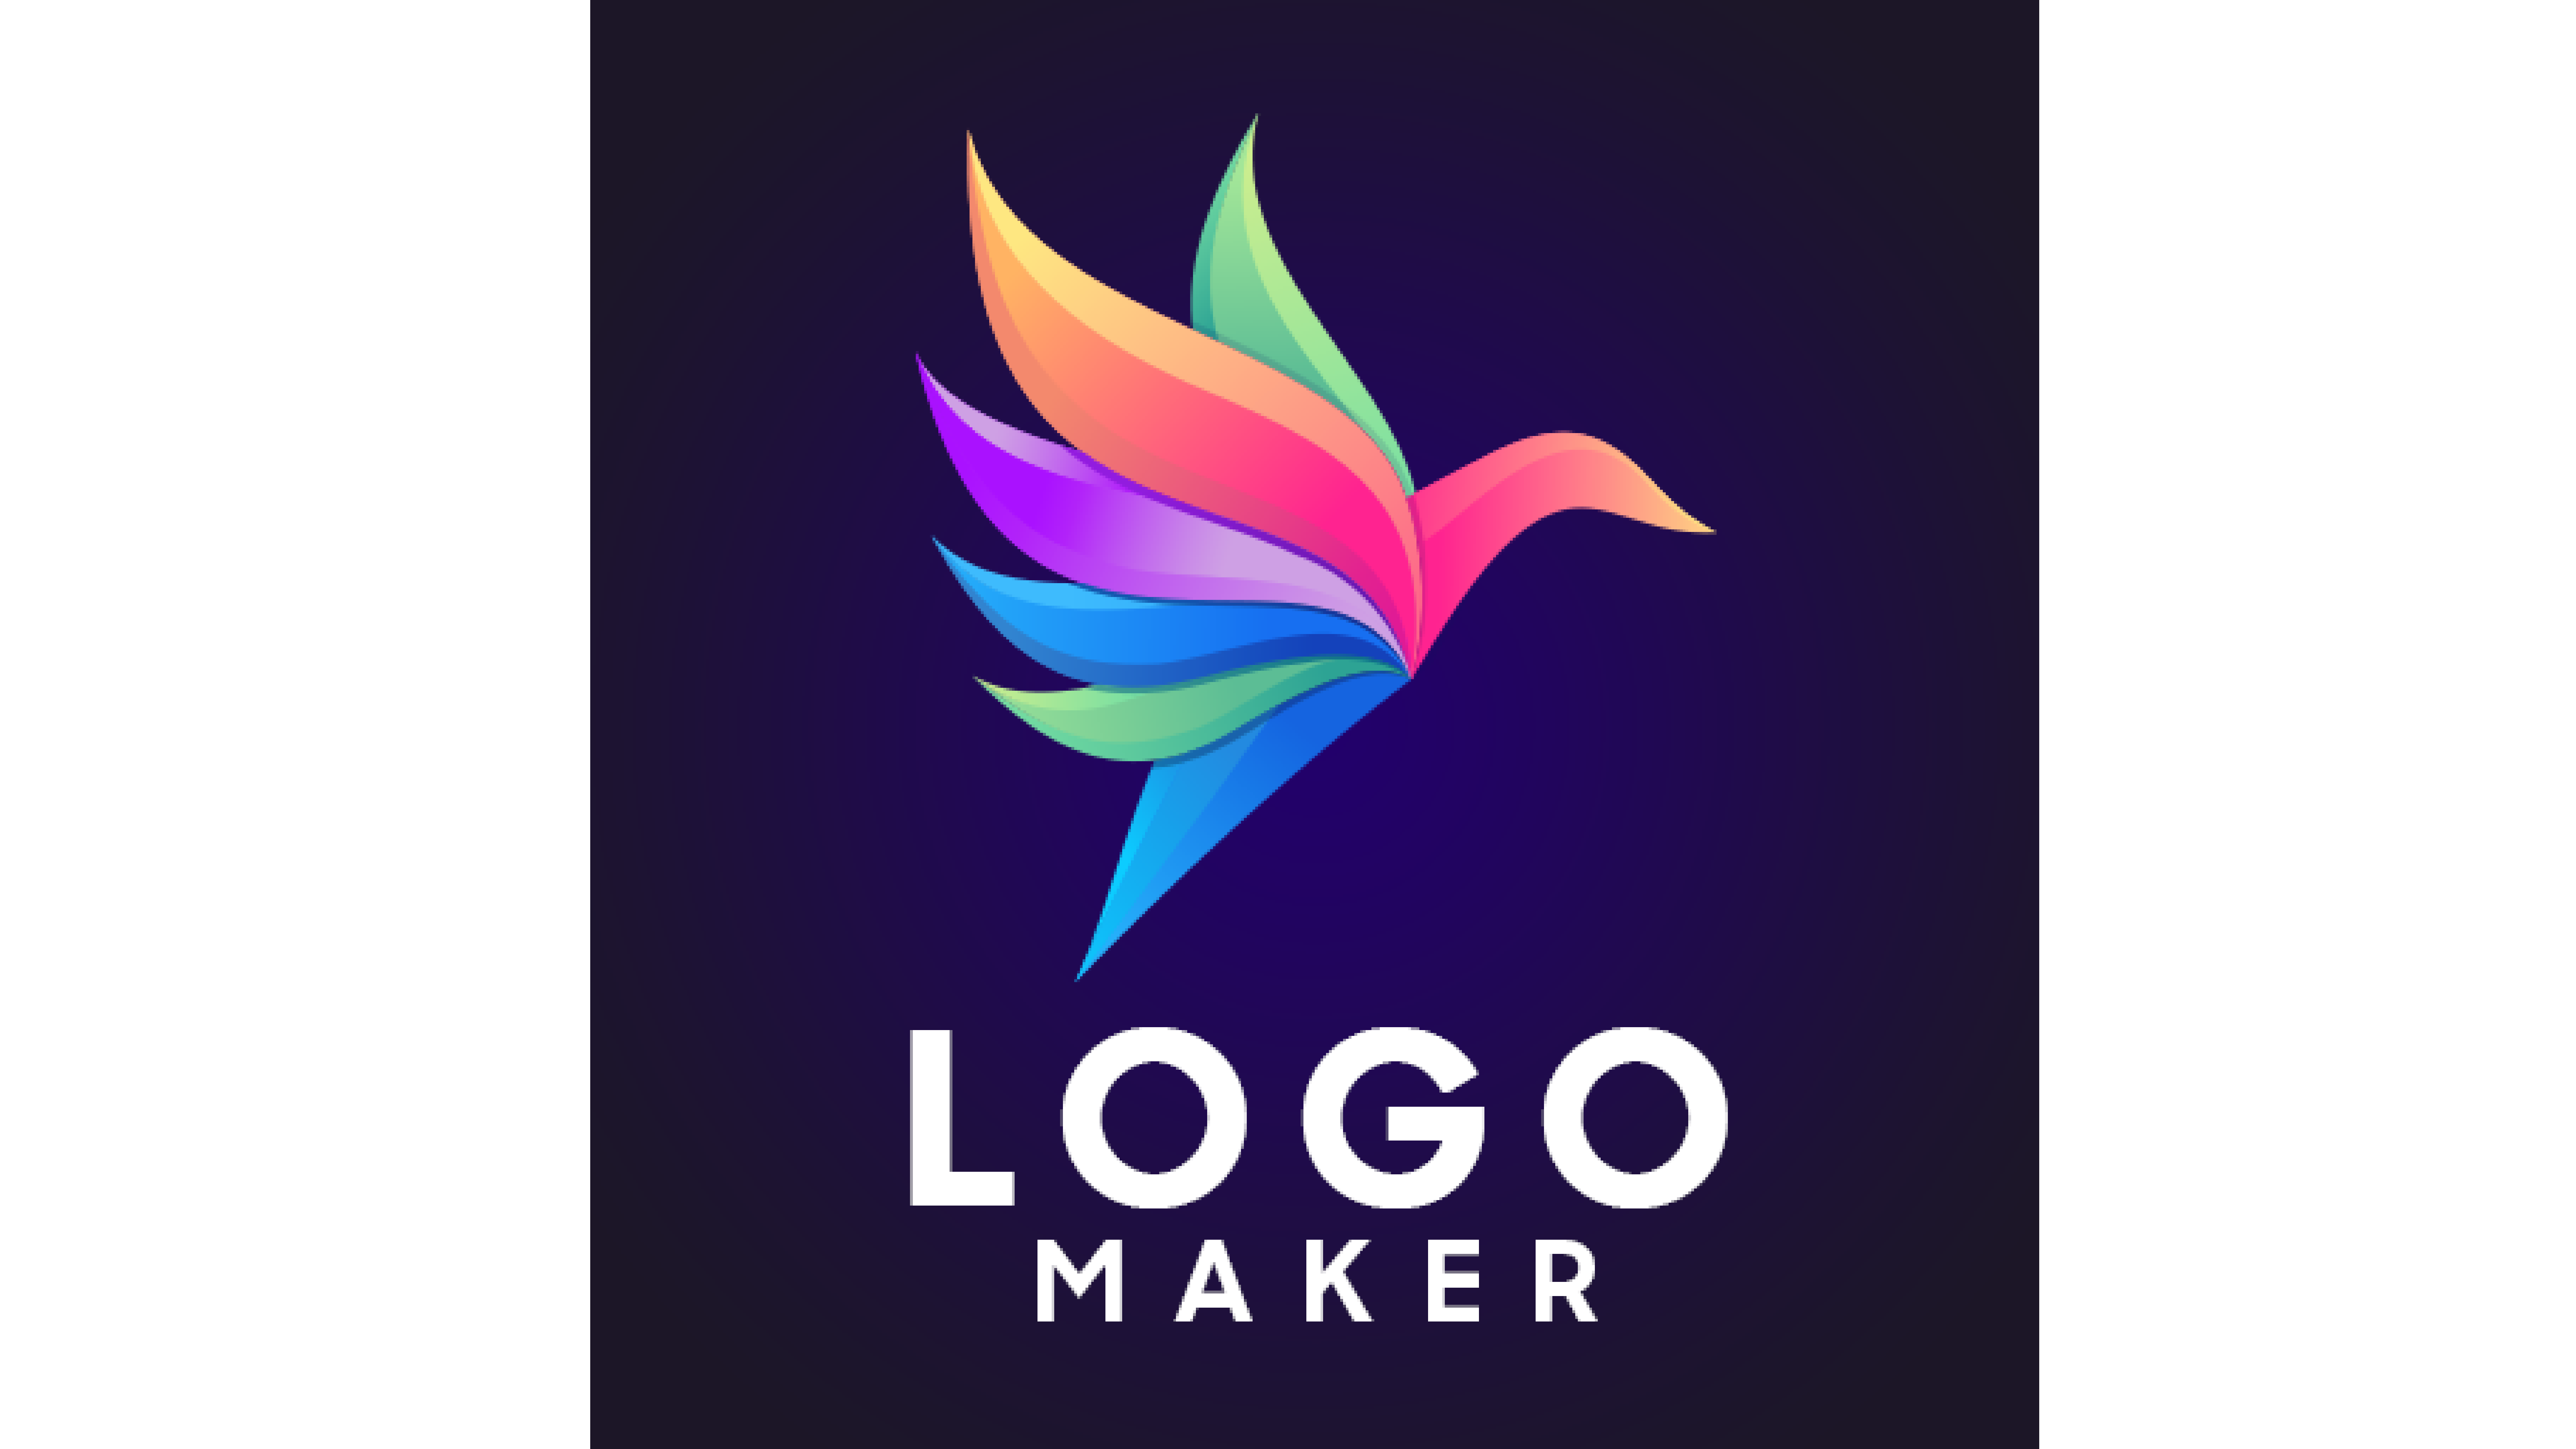 Imagen de la apk Logo maker. Un ave multicolor sobre un fondo azul.